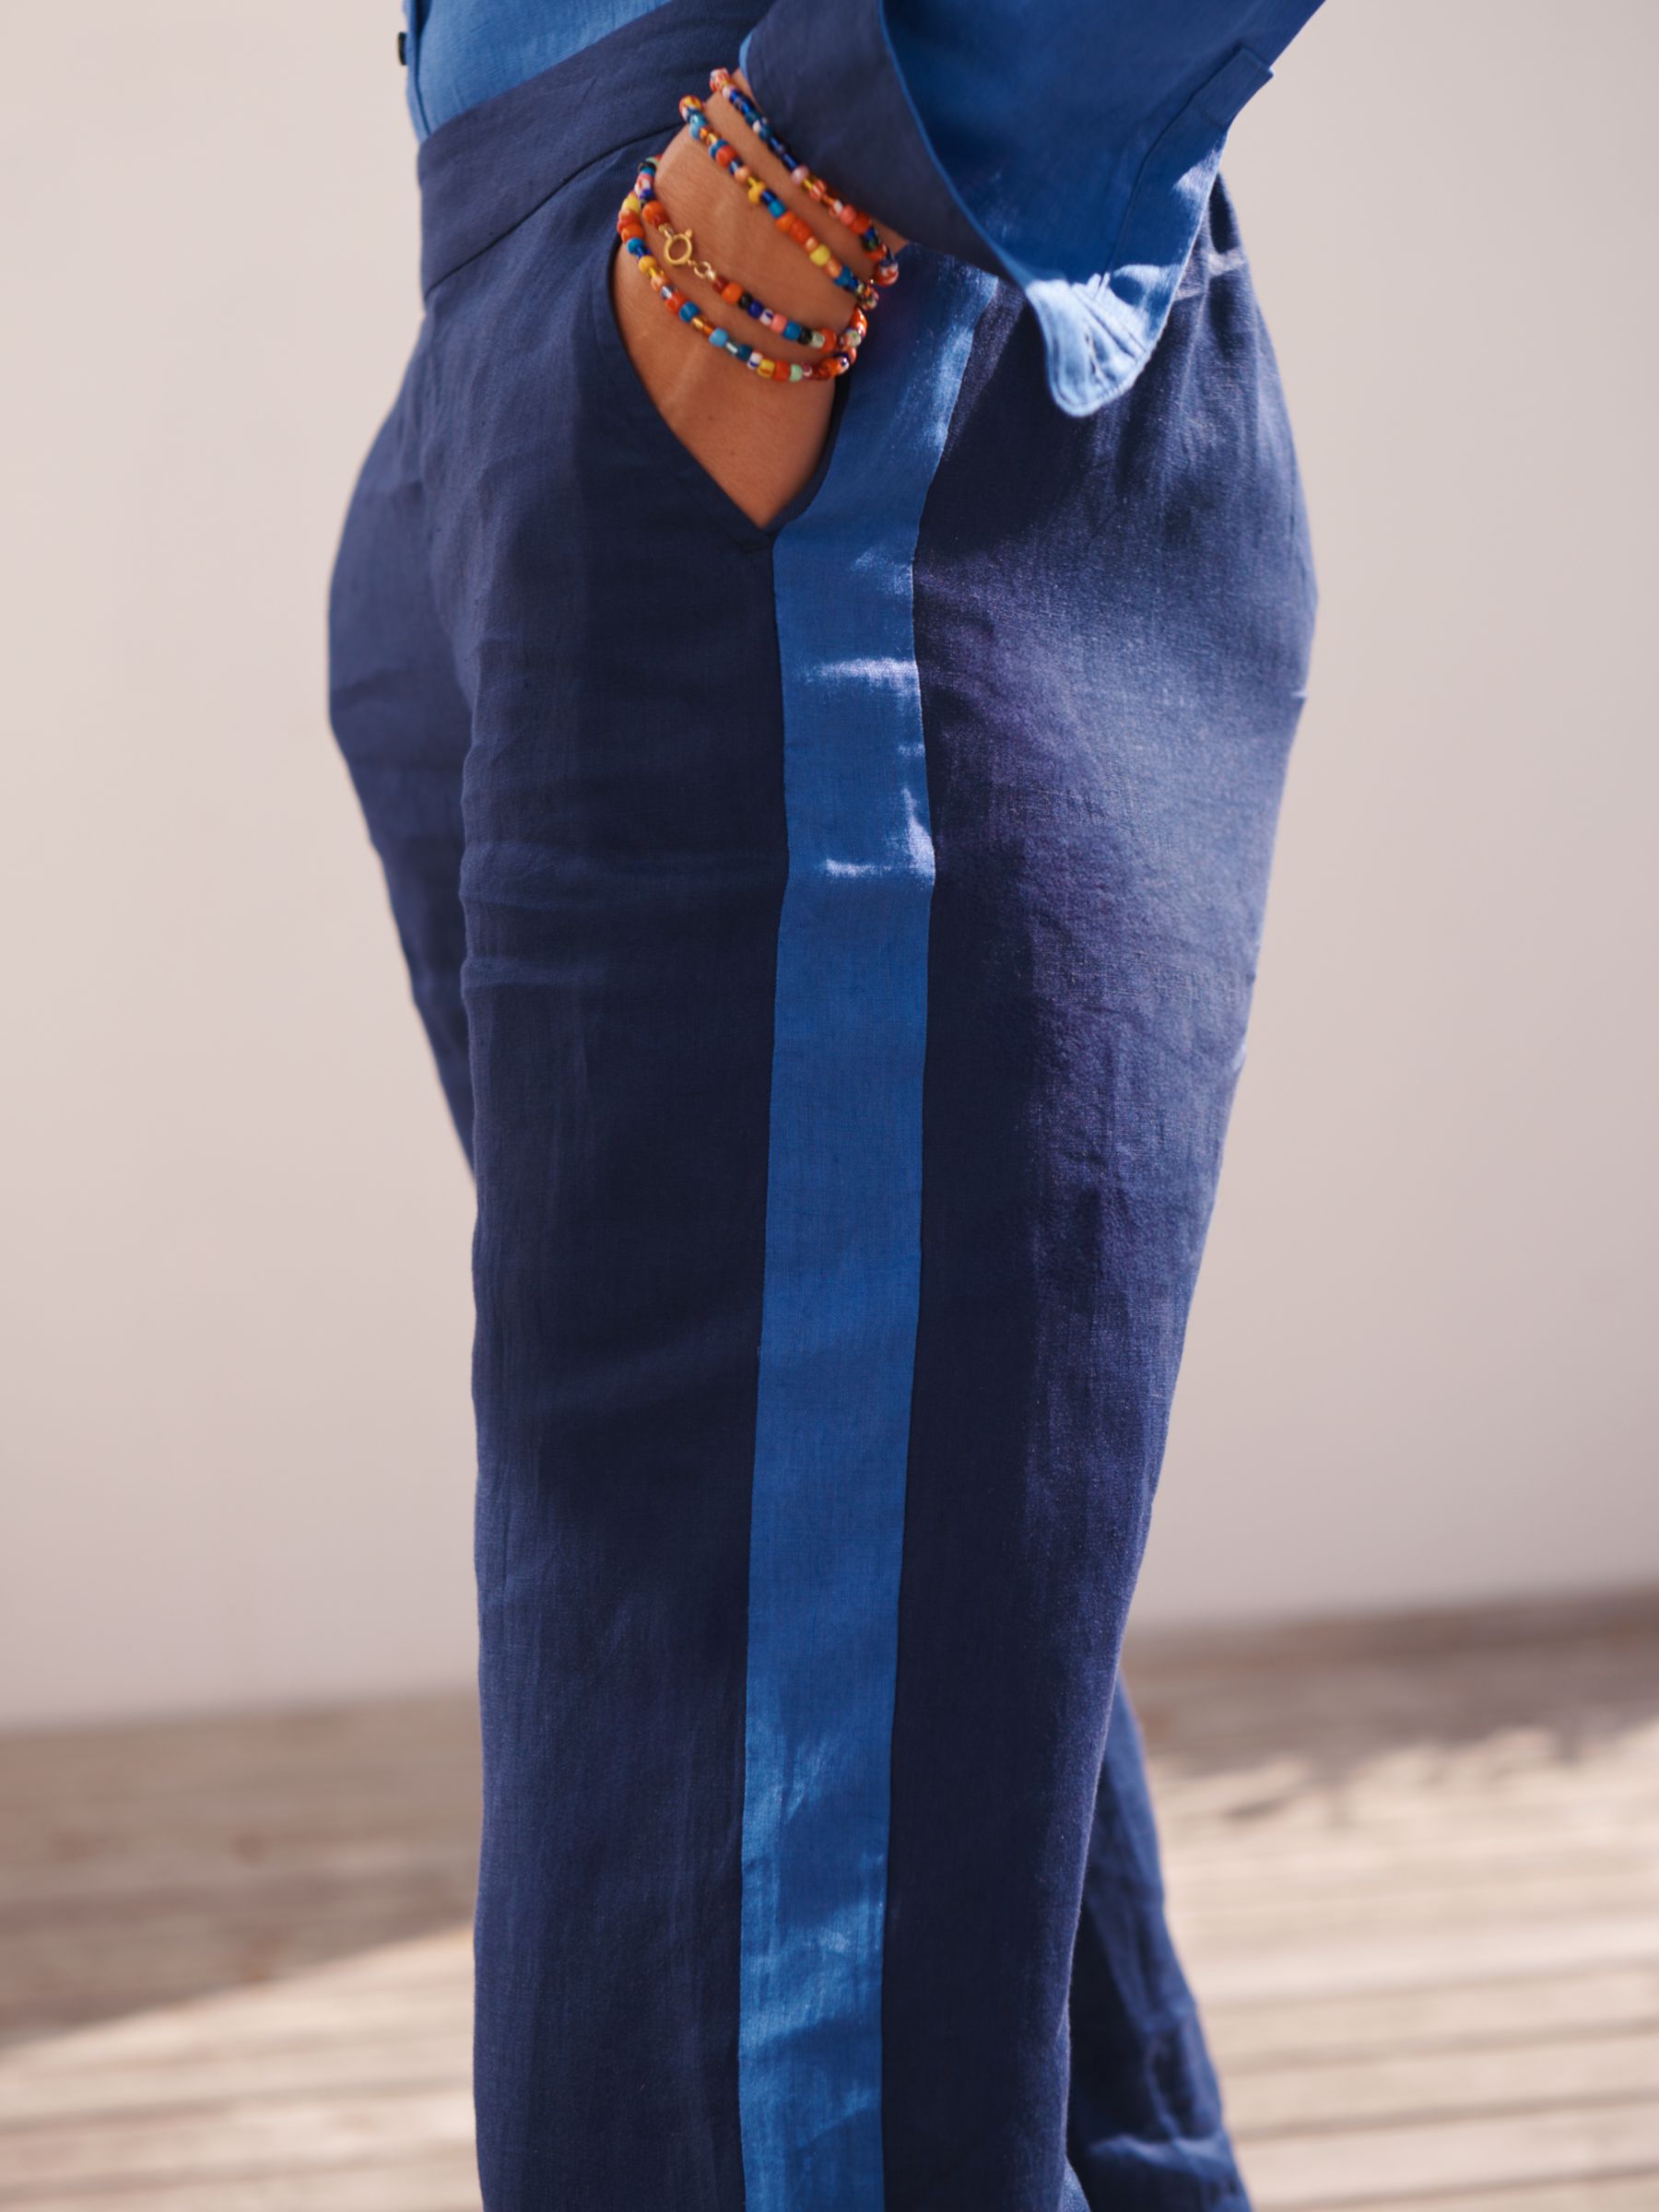 NRBY Thea Side Stripe Linen Trousers, Dark Navy/Light Blue, XS